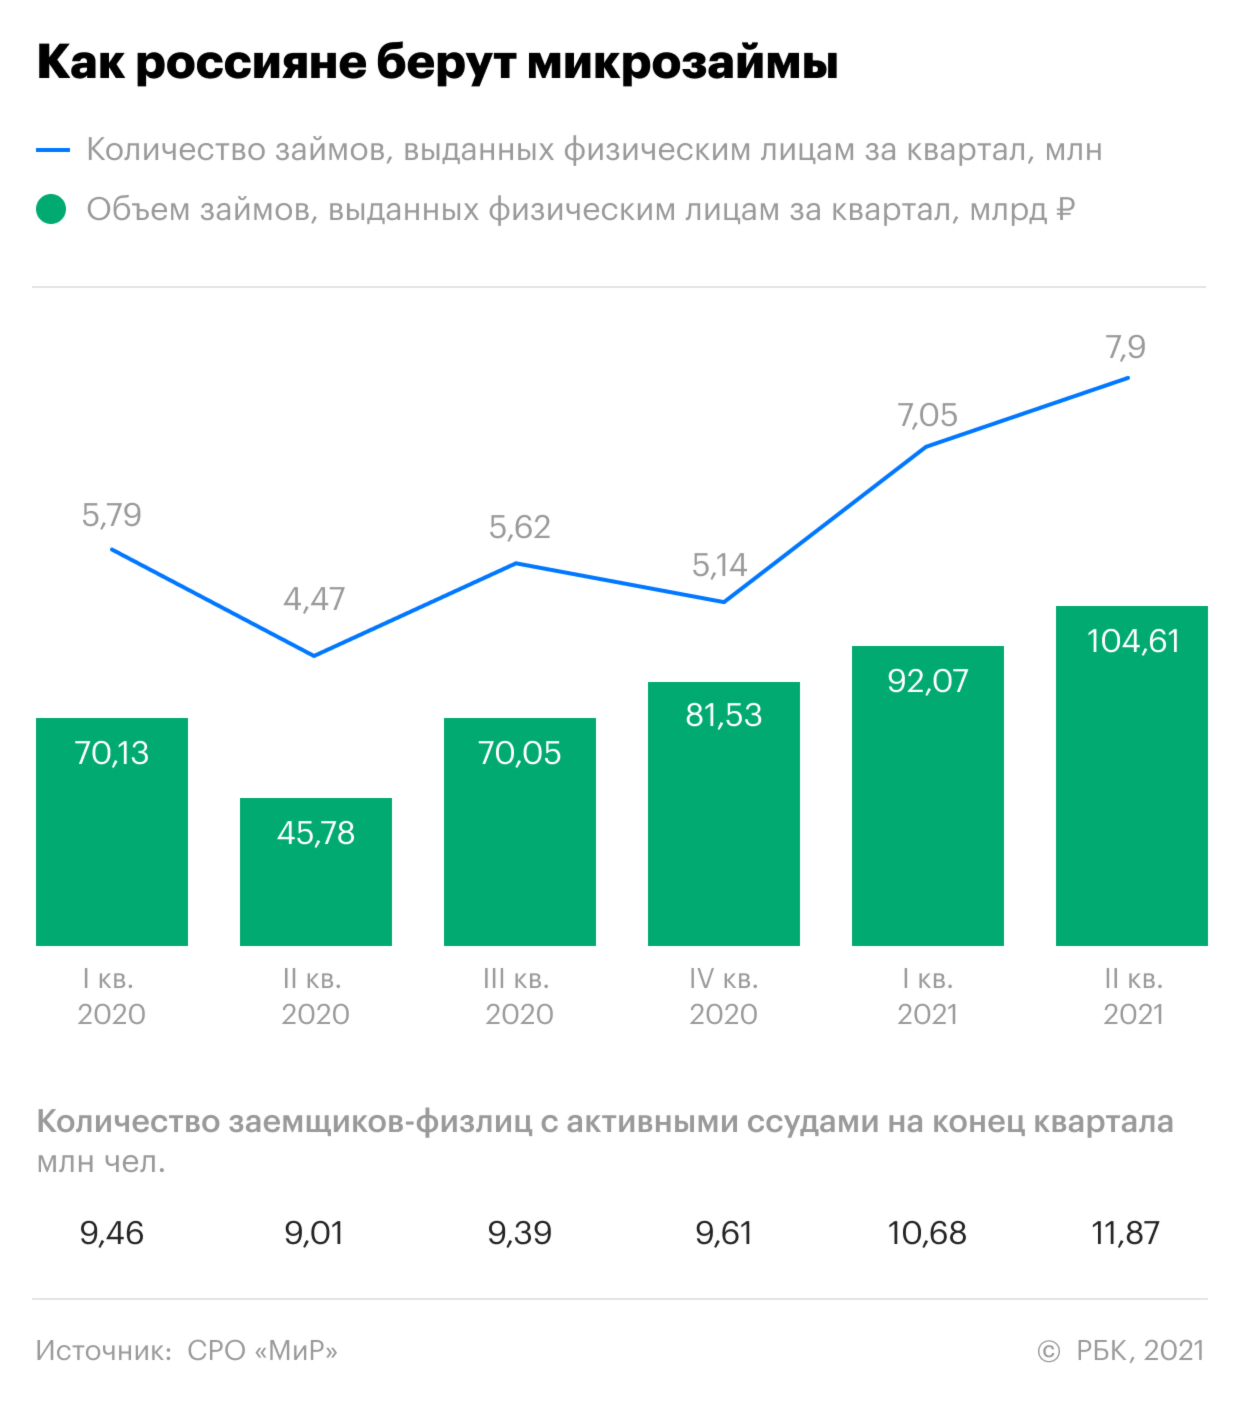 Как россияне взяли микрозаймов на ₽100 млрд за квартал. Инфографика